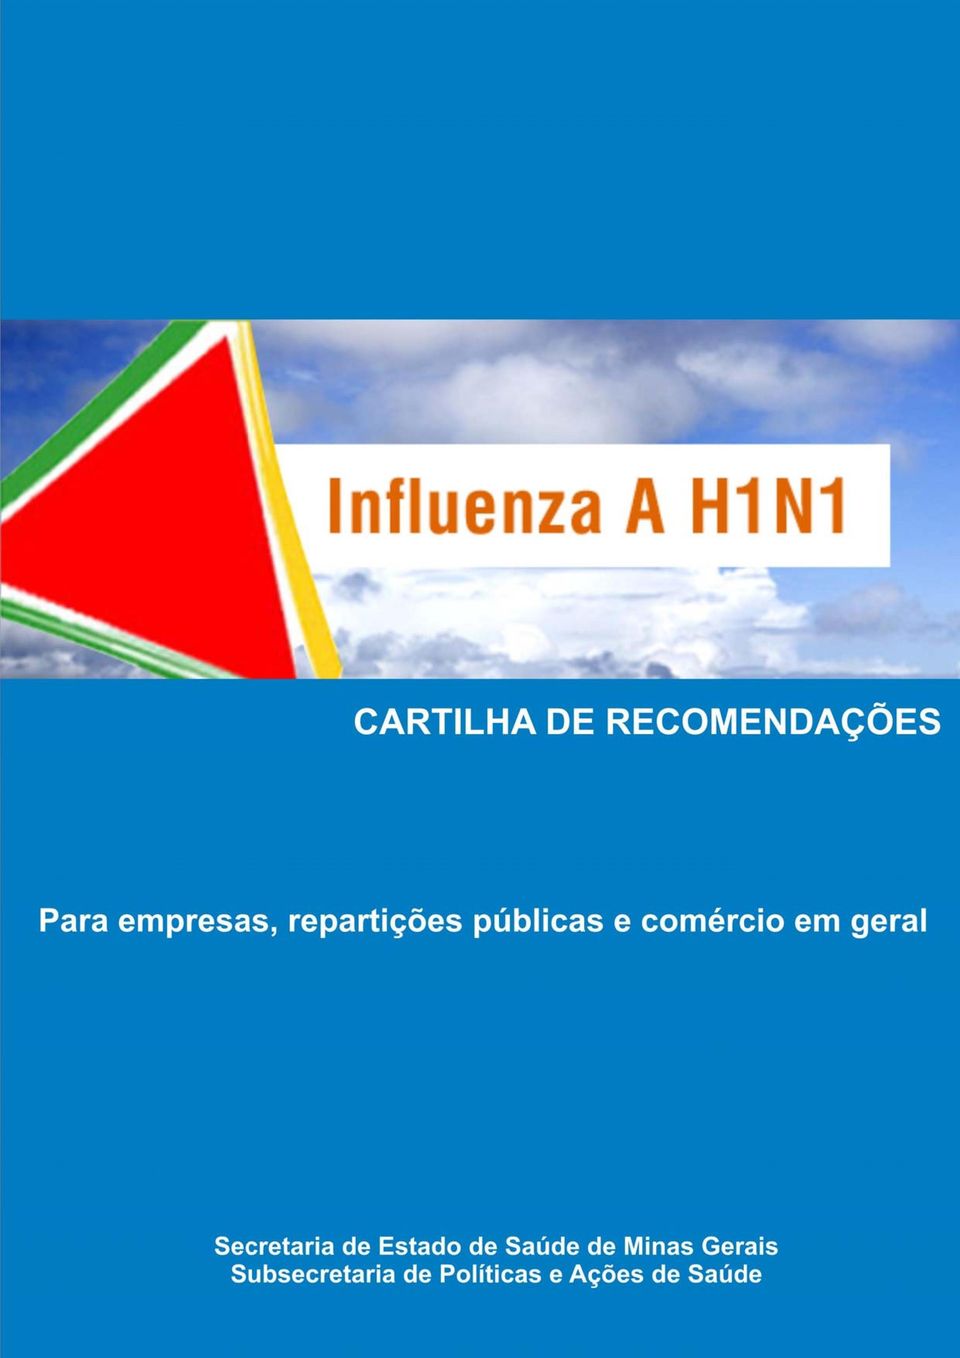 Influenza A H1N1 elaborou esta cartilha com o objetivo de orientar quanto às